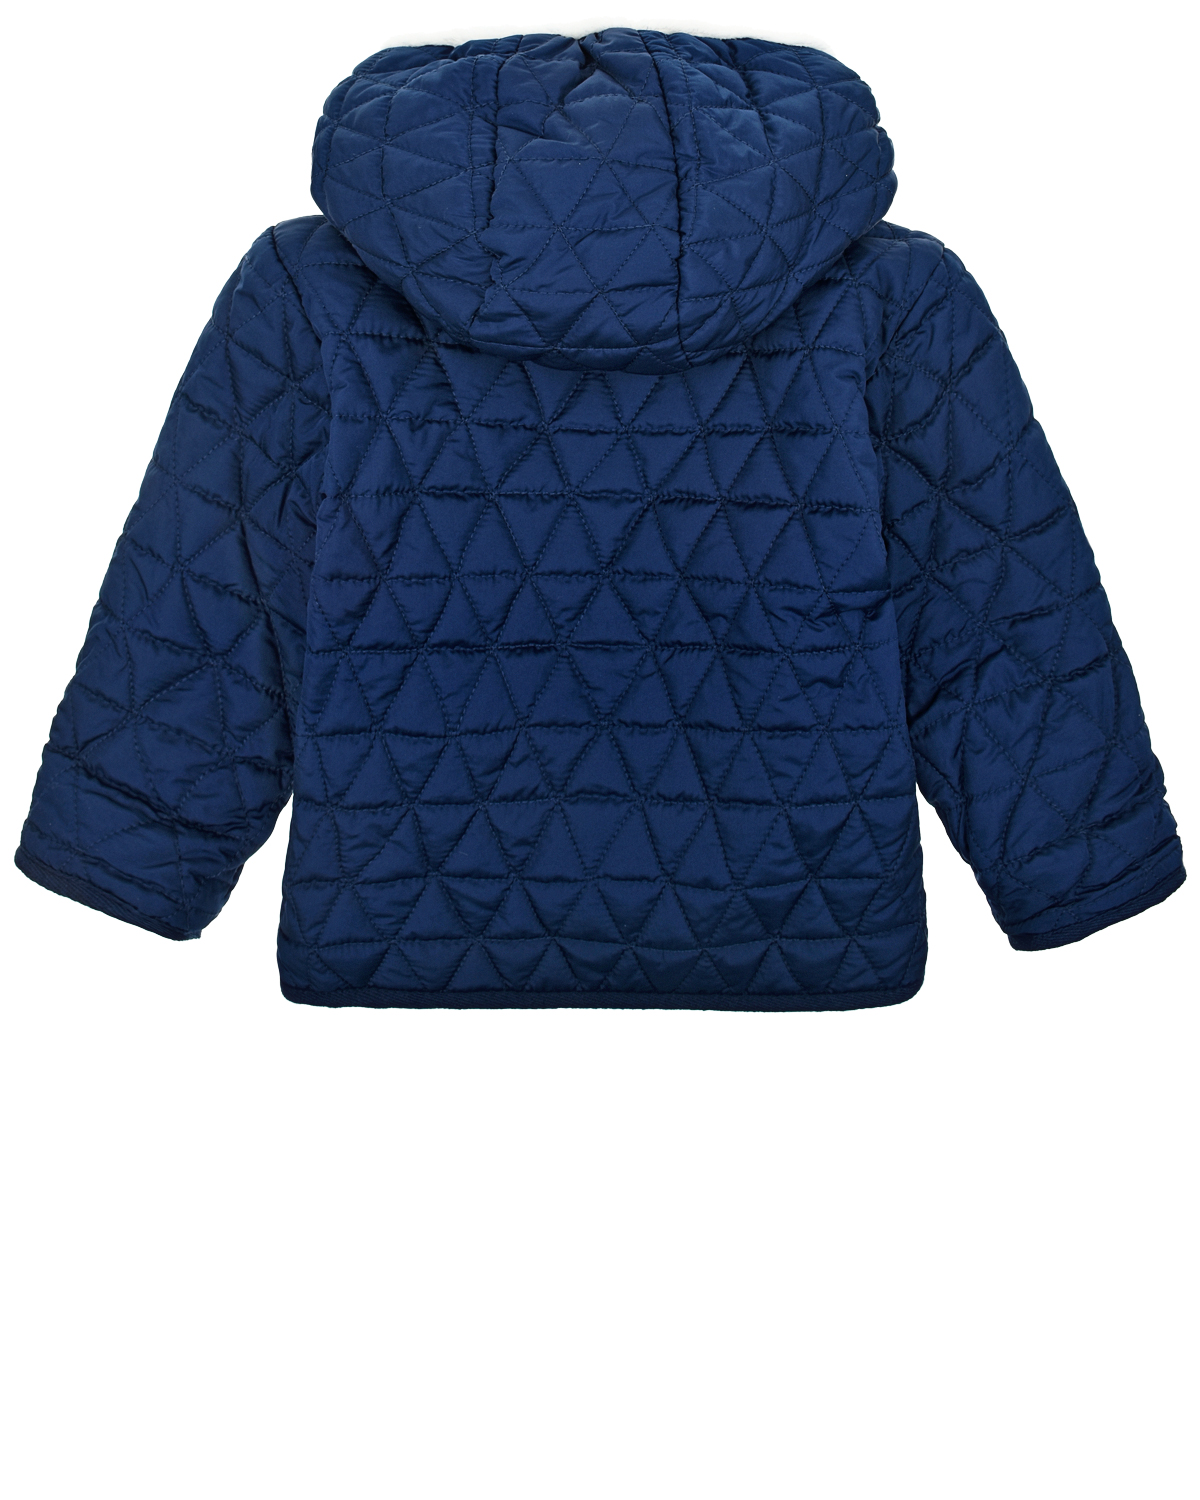 Синяя стеганая куртка. Куртка для мальчика Mishoo by Acoola стеганая синяя 51110130007. Темно синяя стеганая куртка детская. Детская стеганая куртка Моннализа 286 102 6026 купить. Детская стеганая куртка Monnalisa 286 102 6026 купить.